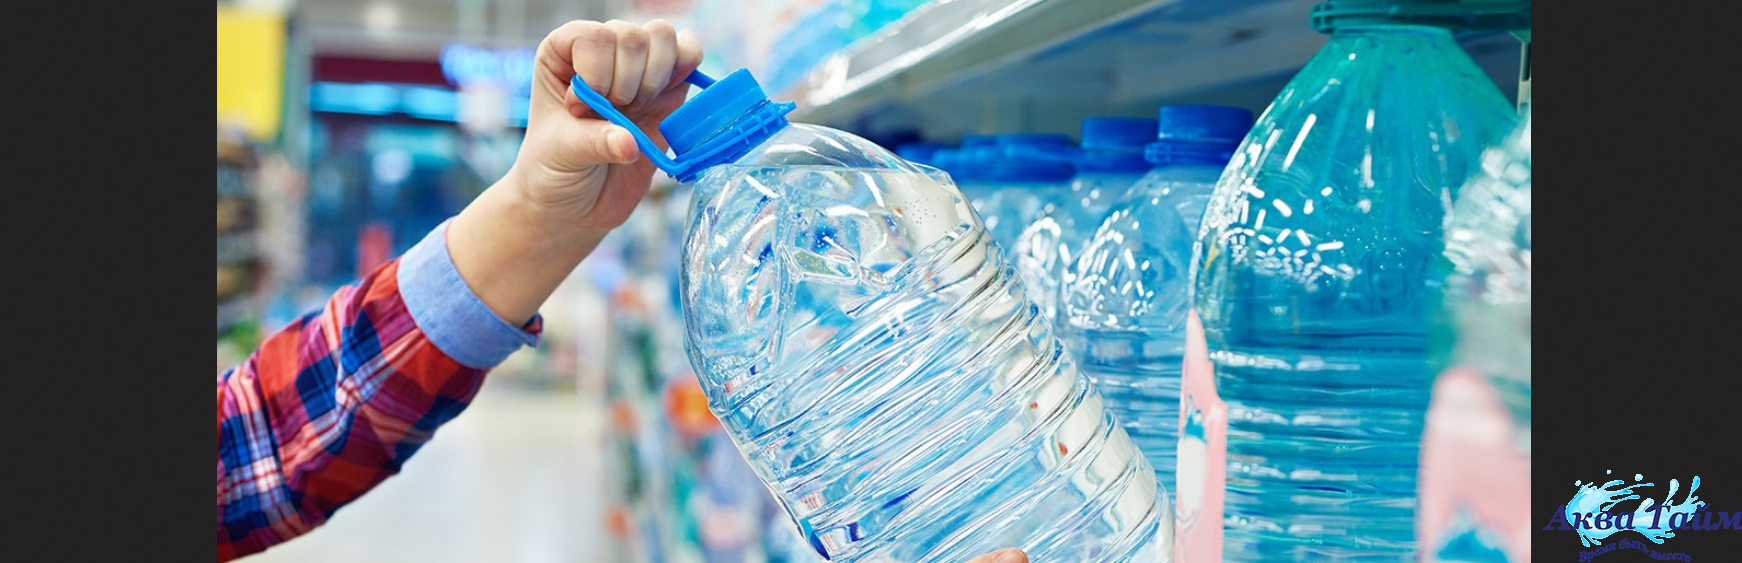 Как правильно выбрать воду: питьевую и минеральную?